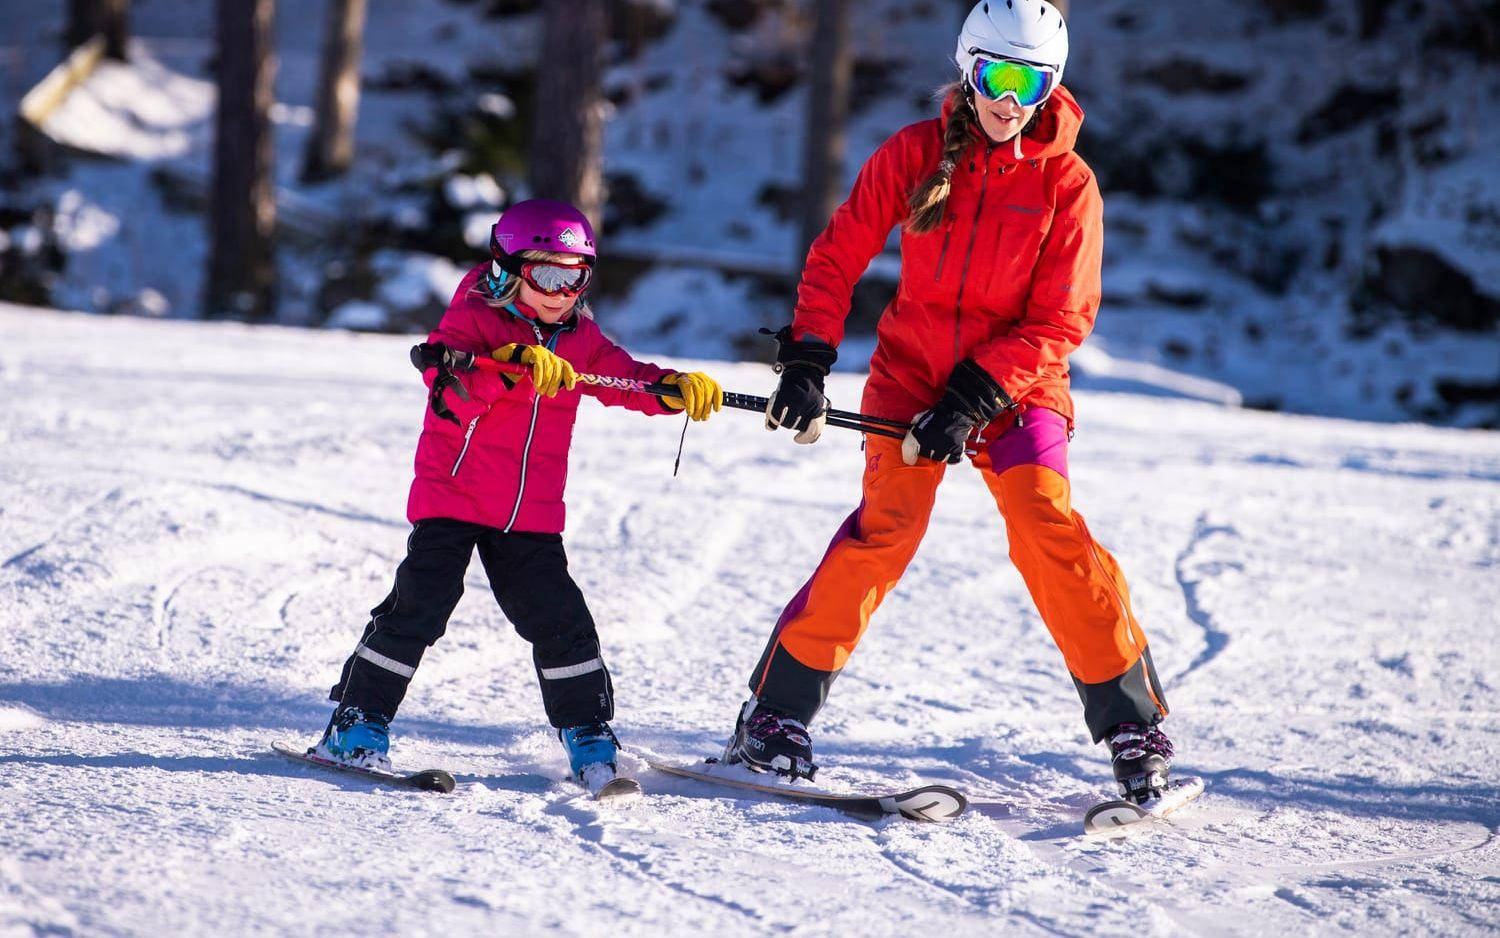 Iselin Haugland åker skidor med mamma Merethe Haugland för första gången i Alebacken. ”Det är underbart. Perfekt för barnen att lära sig. Och det är nära. Det är fördelen att kunna åka hit på en dagstur”, säger Merethe.